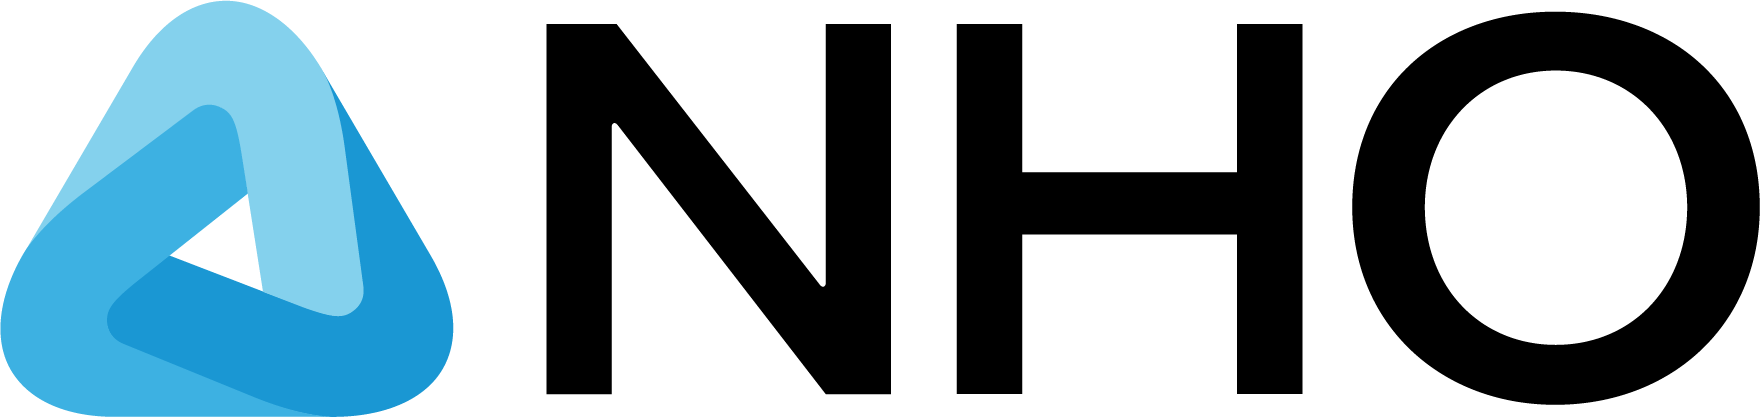 logo-header-002 (1)